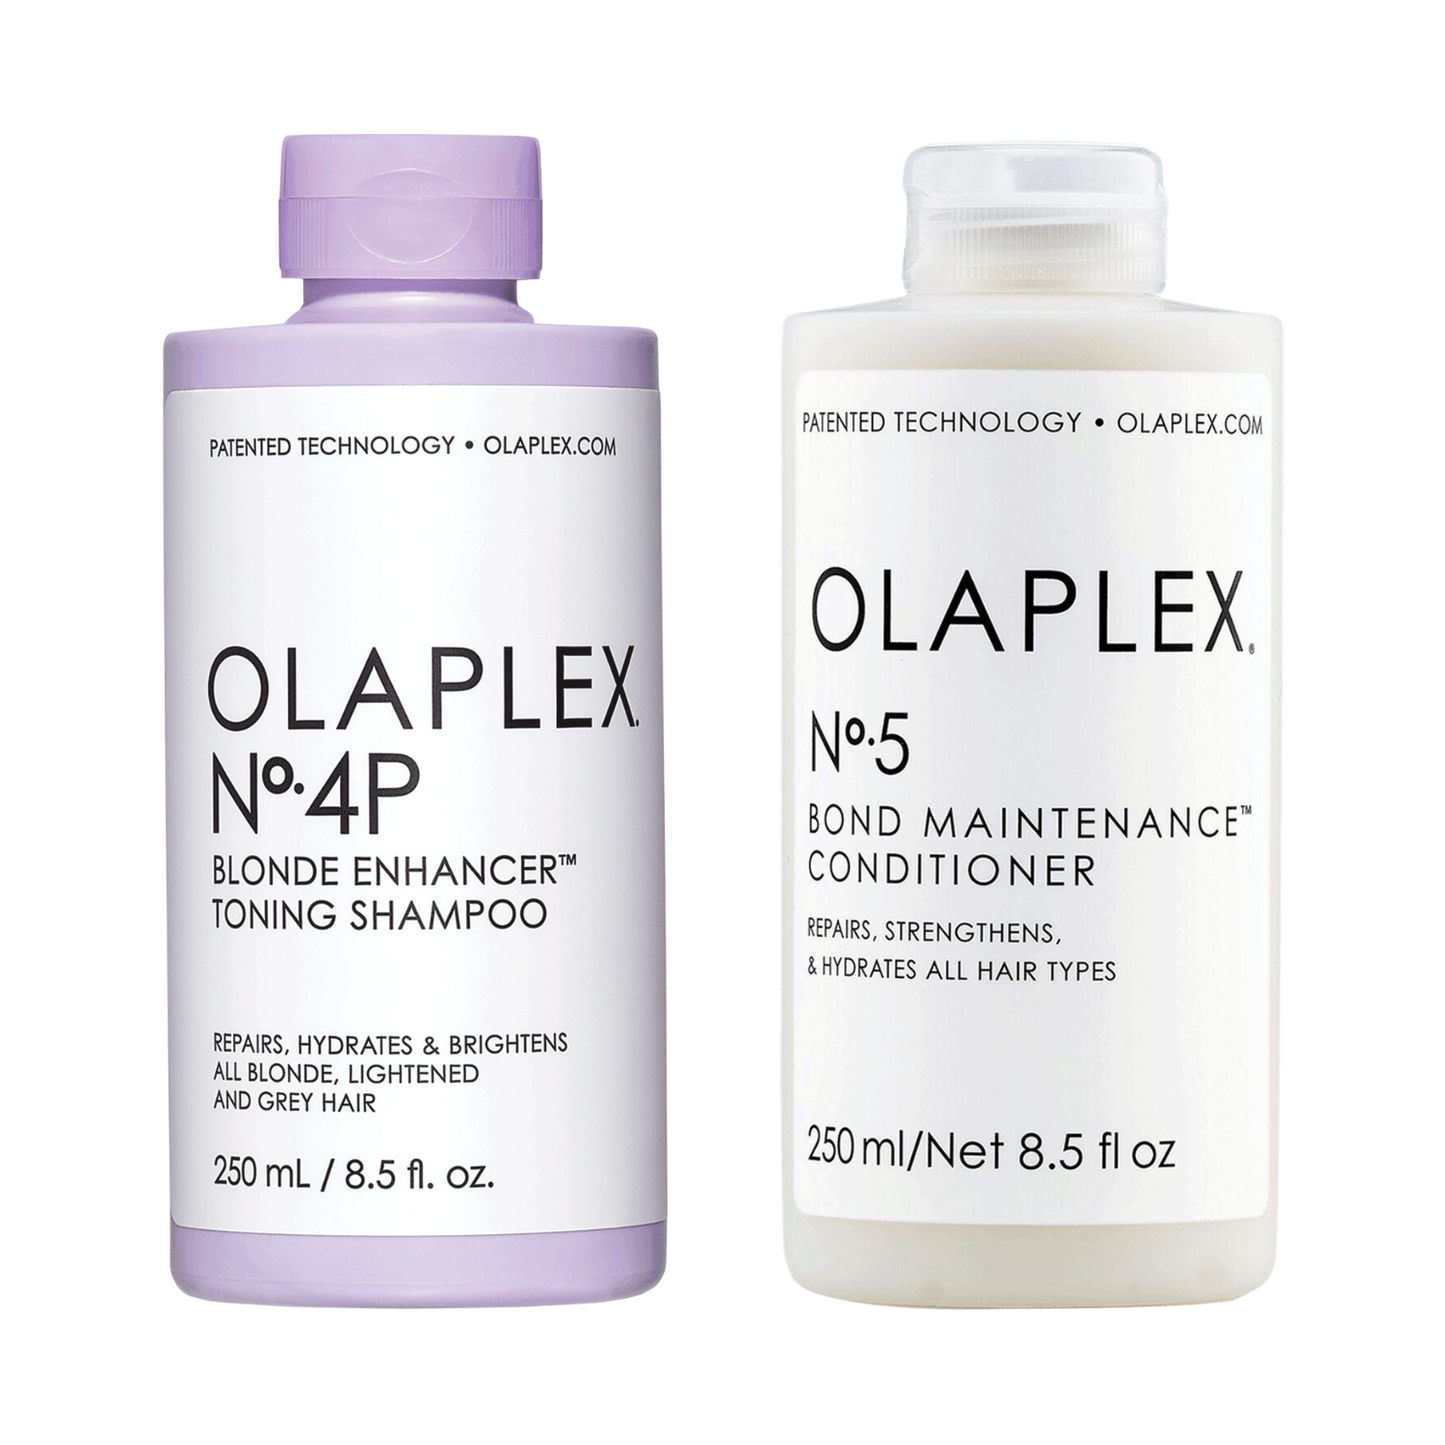 Olaplex No. 4P Blonde Enhancer Toning Shampoo & No. 5 Bond Maintenance Conditioner